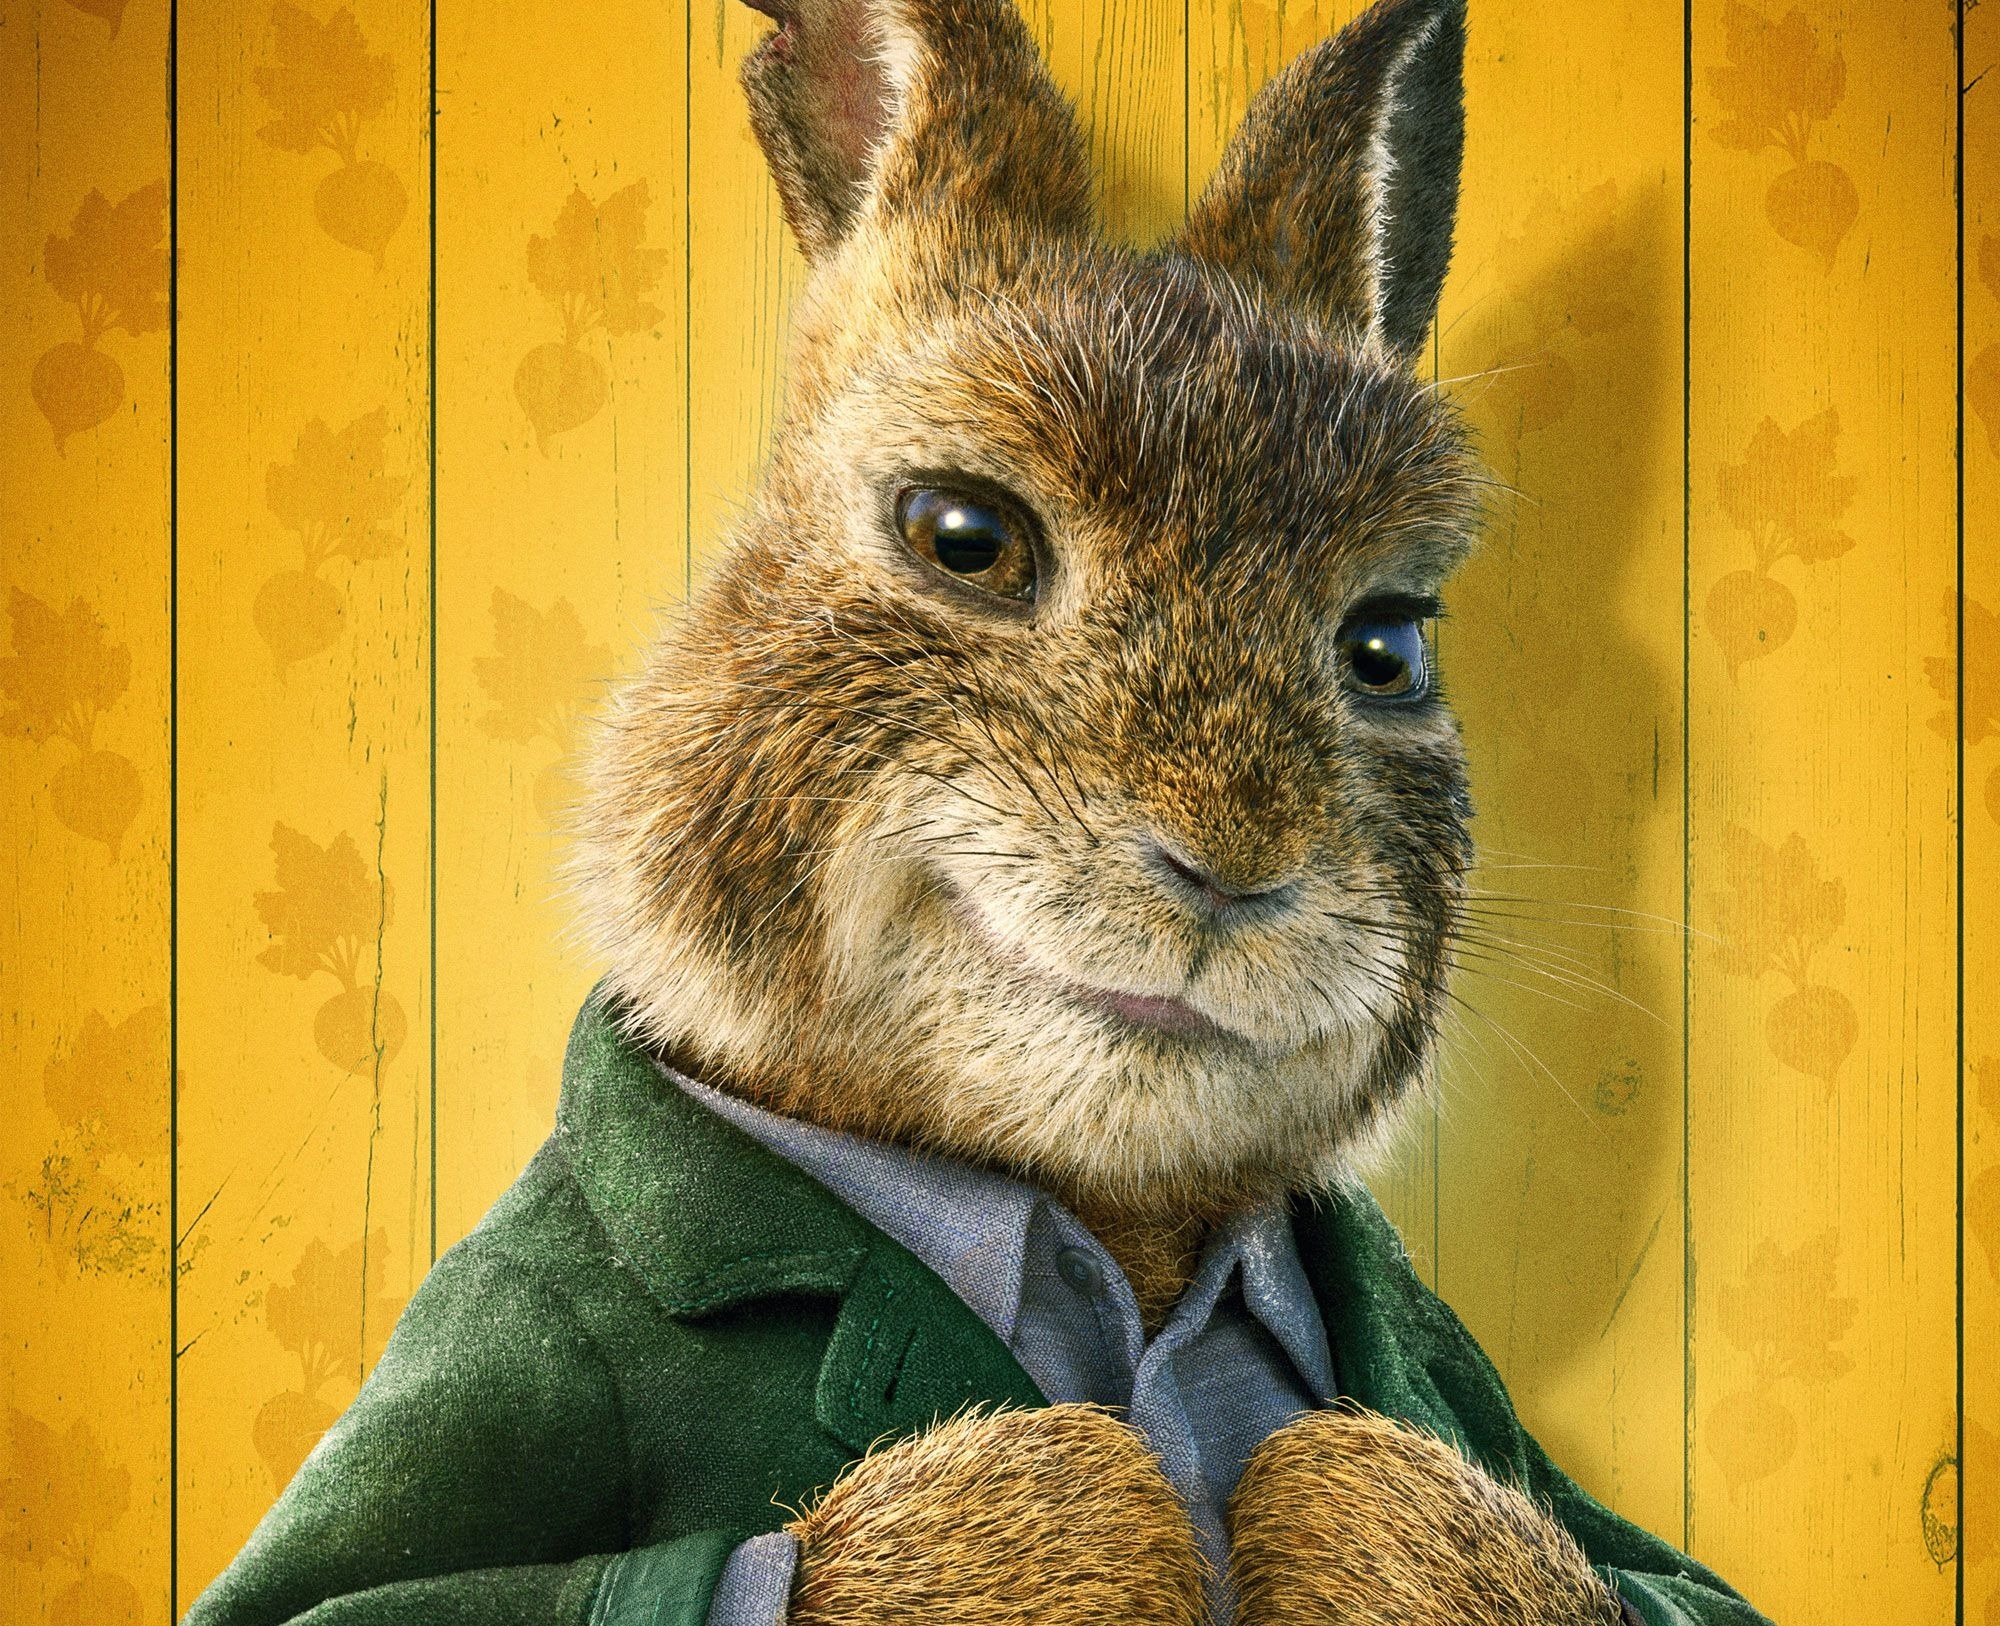 movie, peter rabbit 2: the runaway